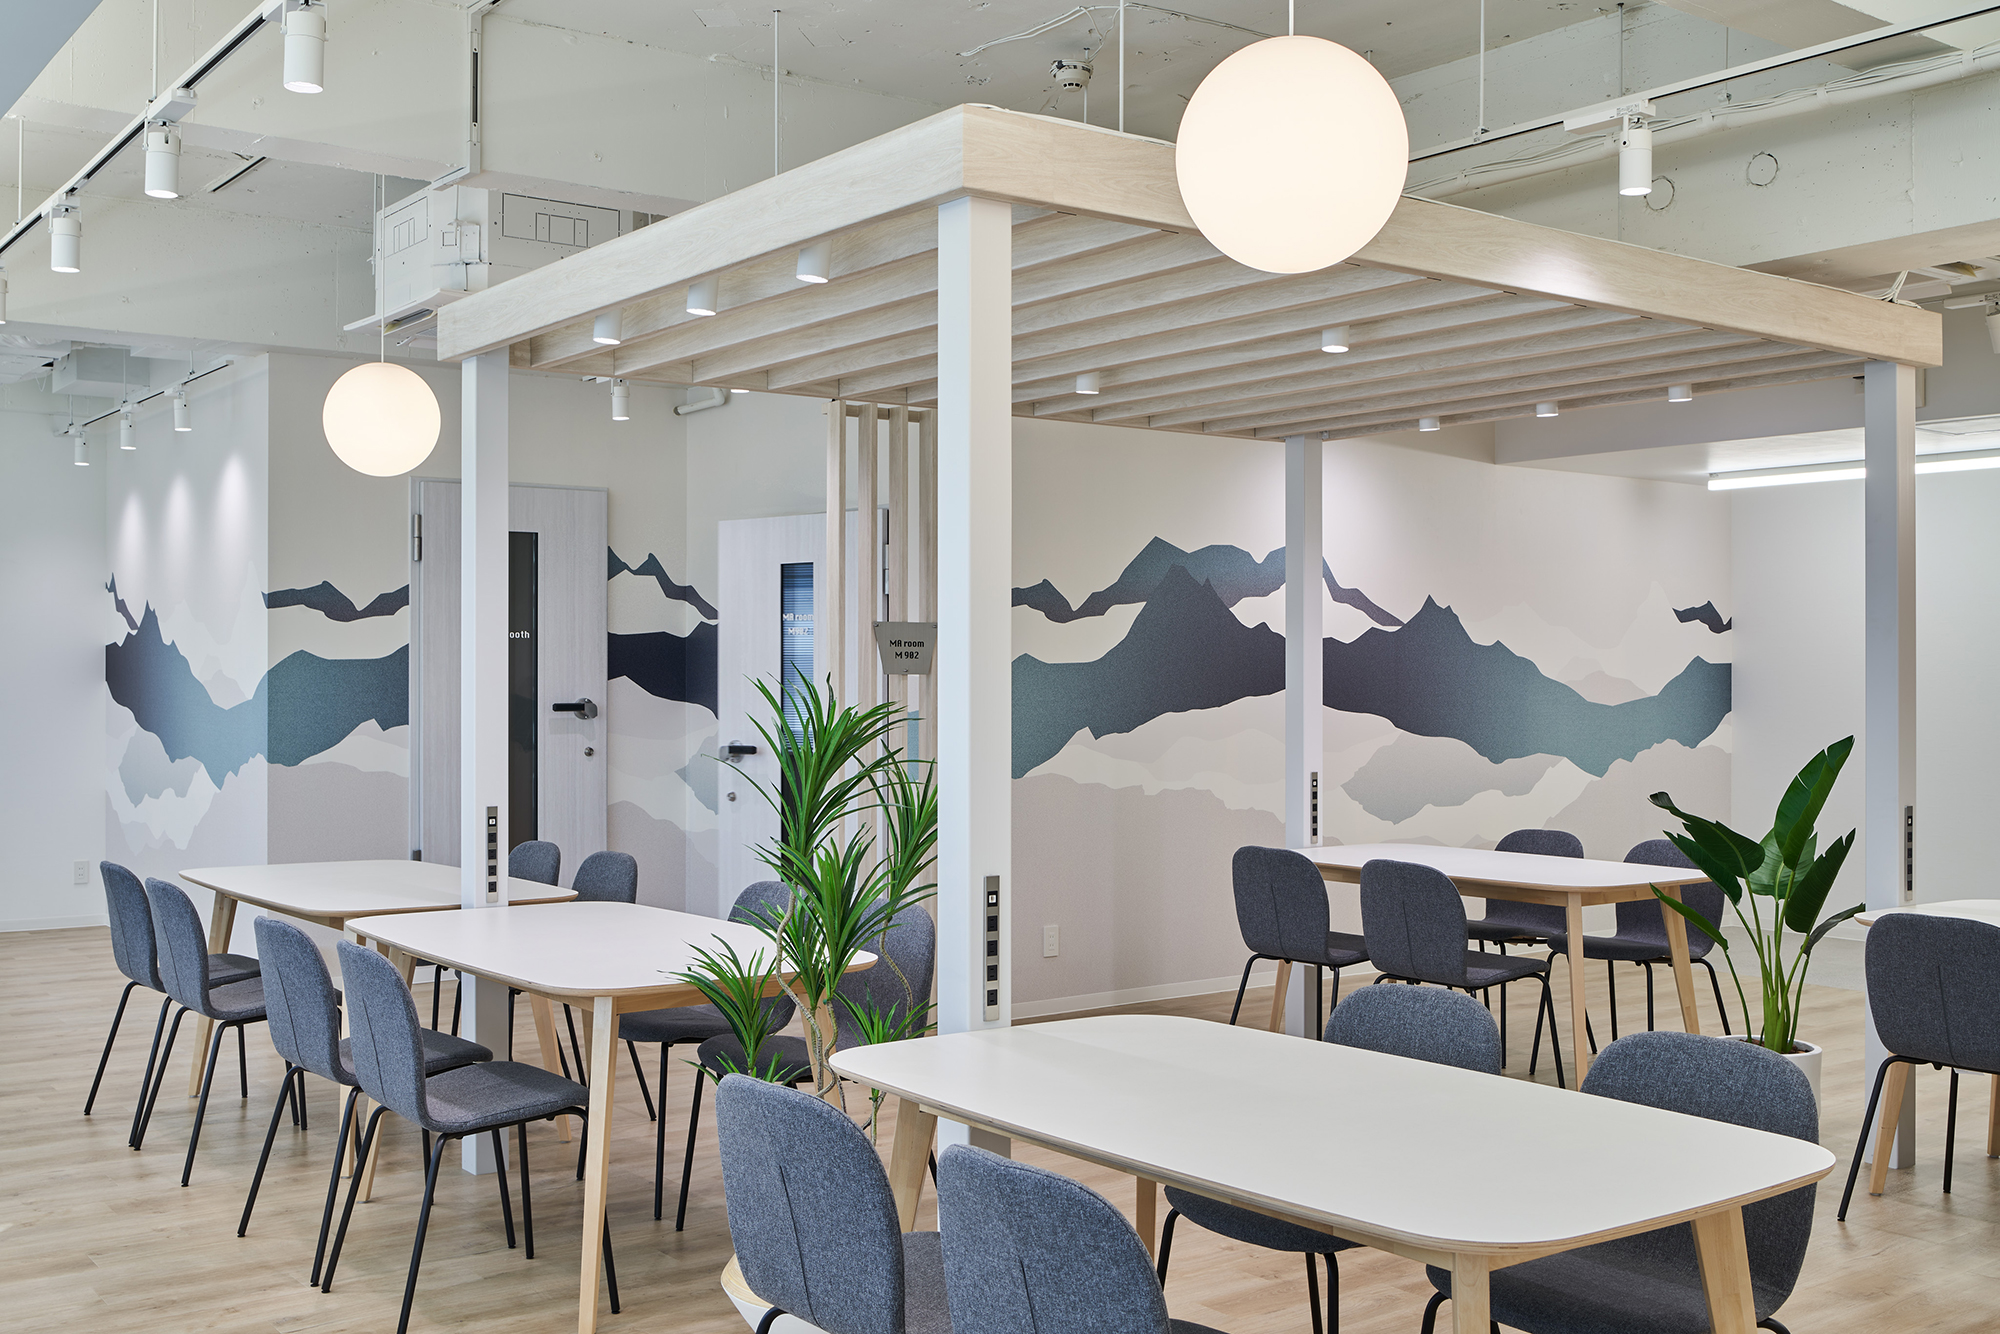 港区のオフィスのネイビーと白地の木の調和が美しいコミュニケーションスペースに、空間の色調とマッチした山並みを感じるデザインを展開。